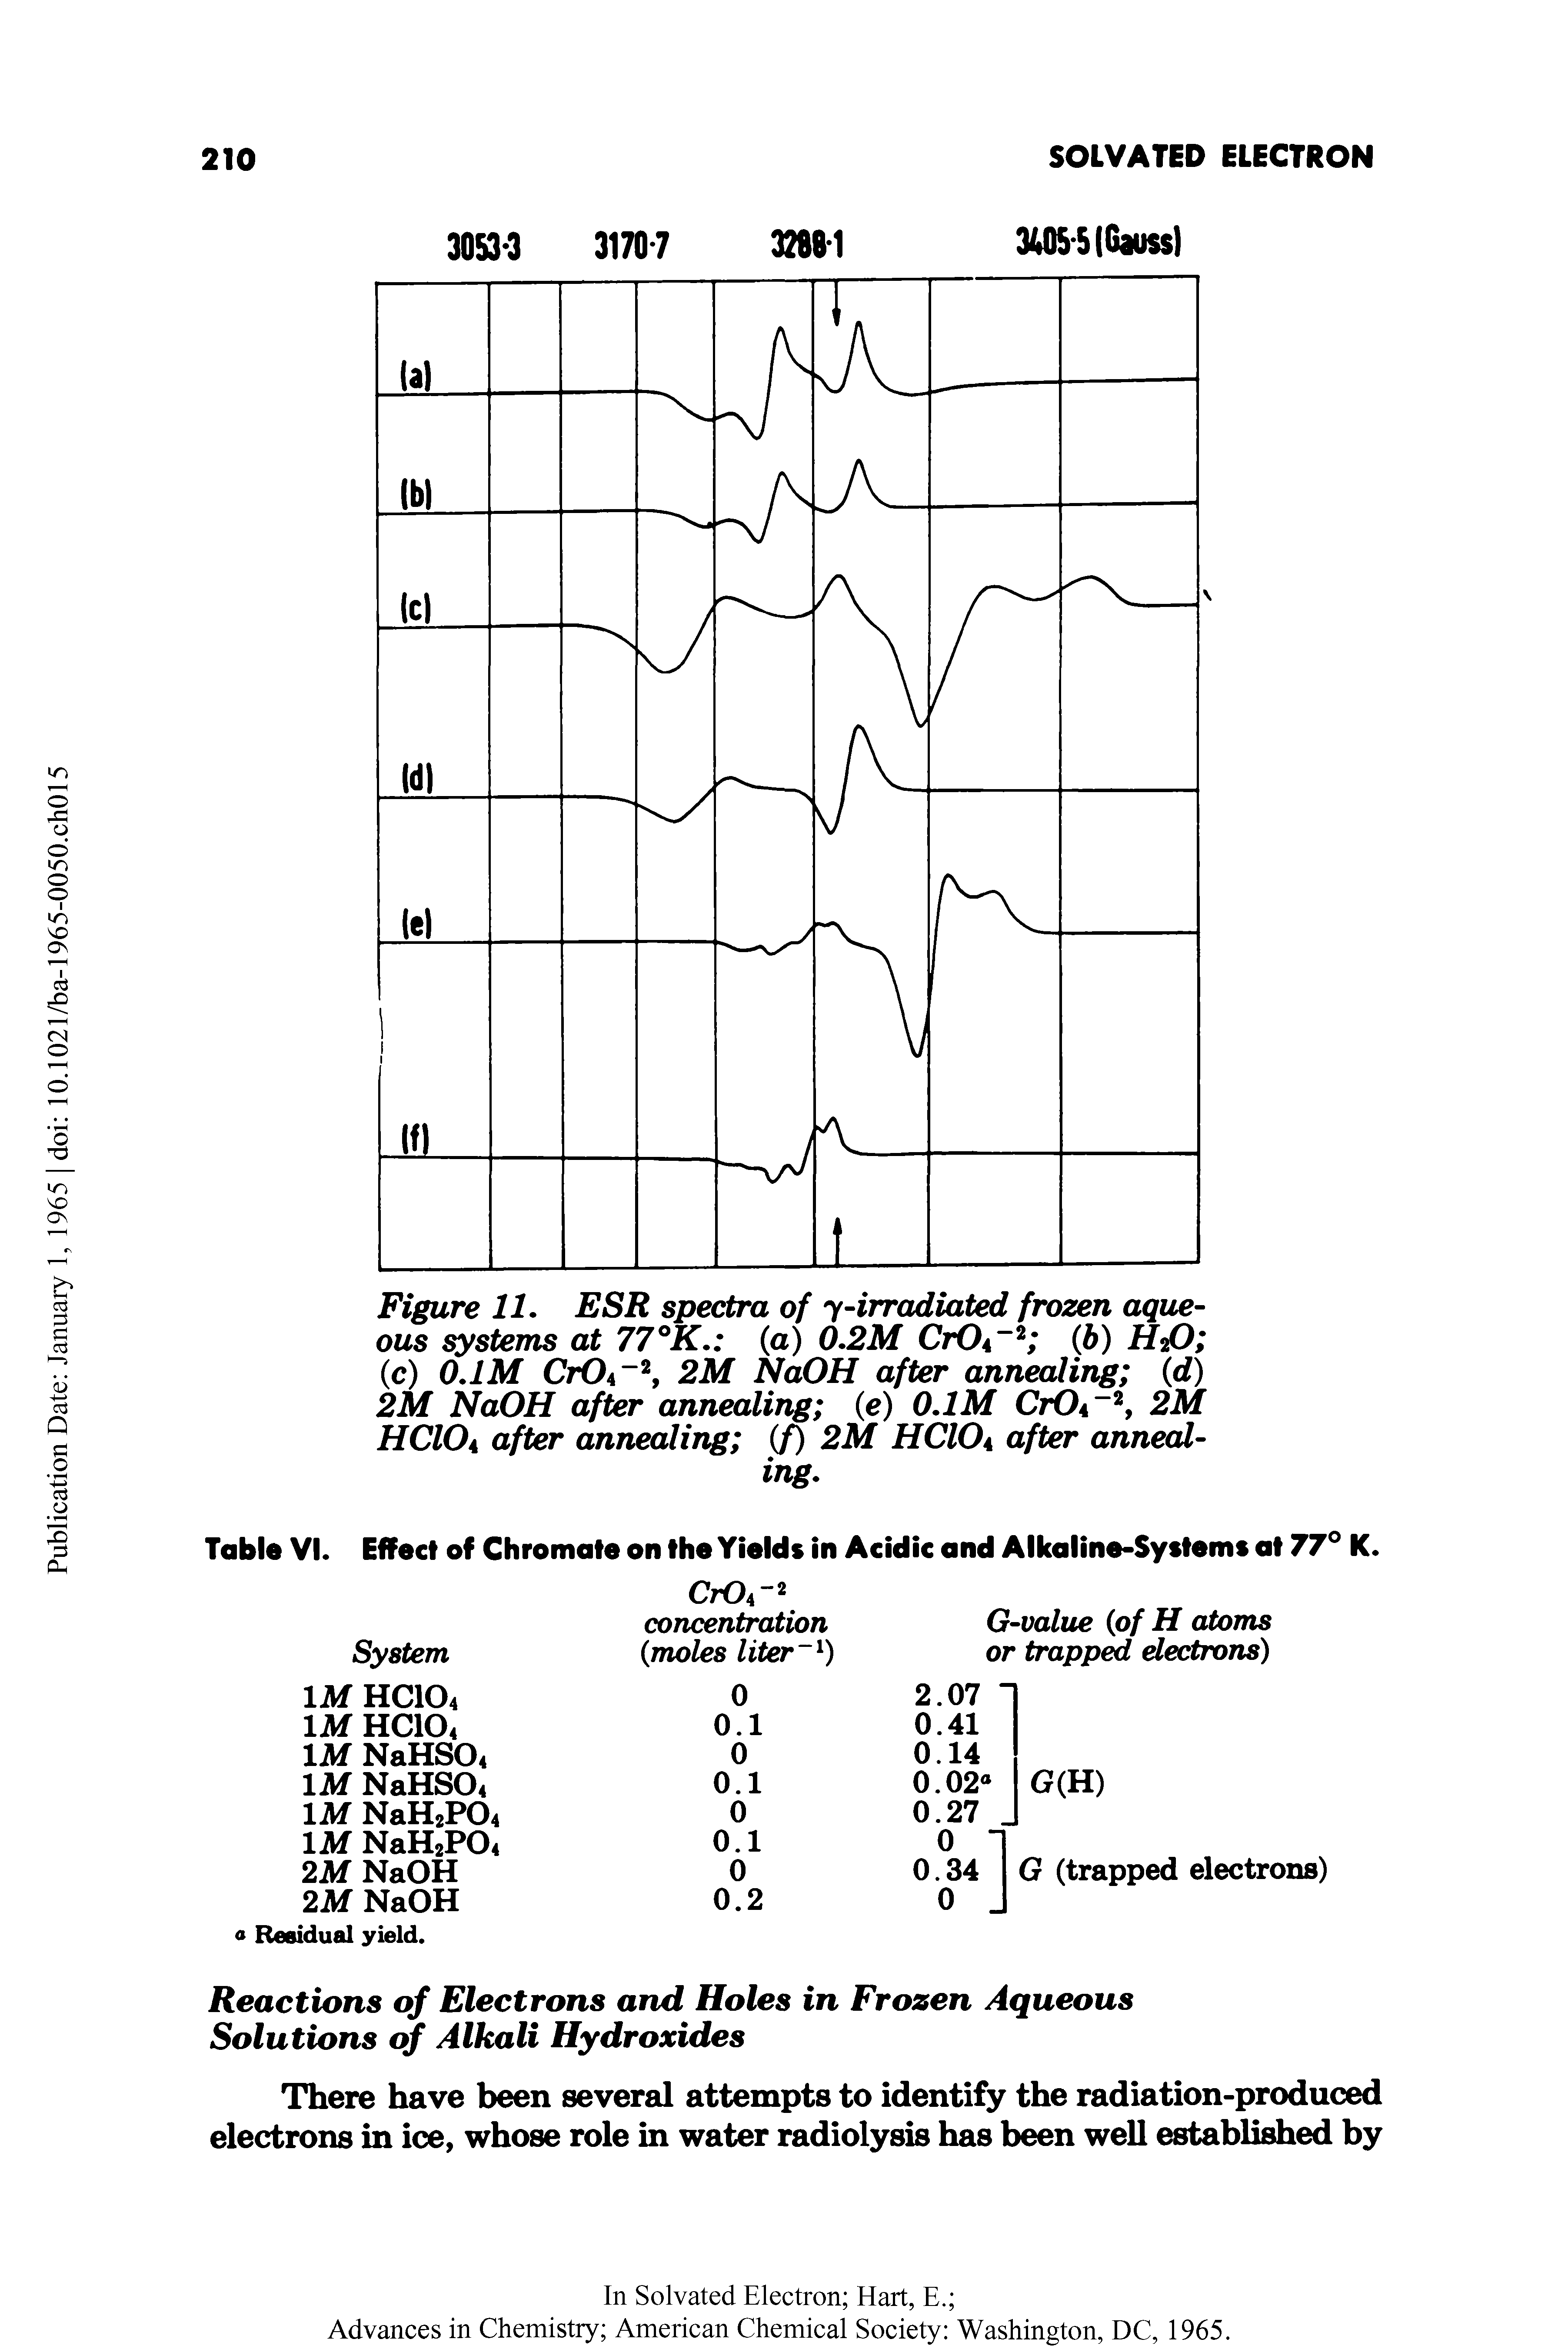 Figure 11. ESR spectra of y-irradiated frozen aqueous systems at 77°K. (a) 0.2M CiOa 2 (6) H2O (c) 0.1M CrO4-2, 2M NaOH after annealing (d) 2M NaOH after annealing (e) 0.1M CtOa 2, 2M HCIOa after annealing (f) 2M HCIOa after annealing.